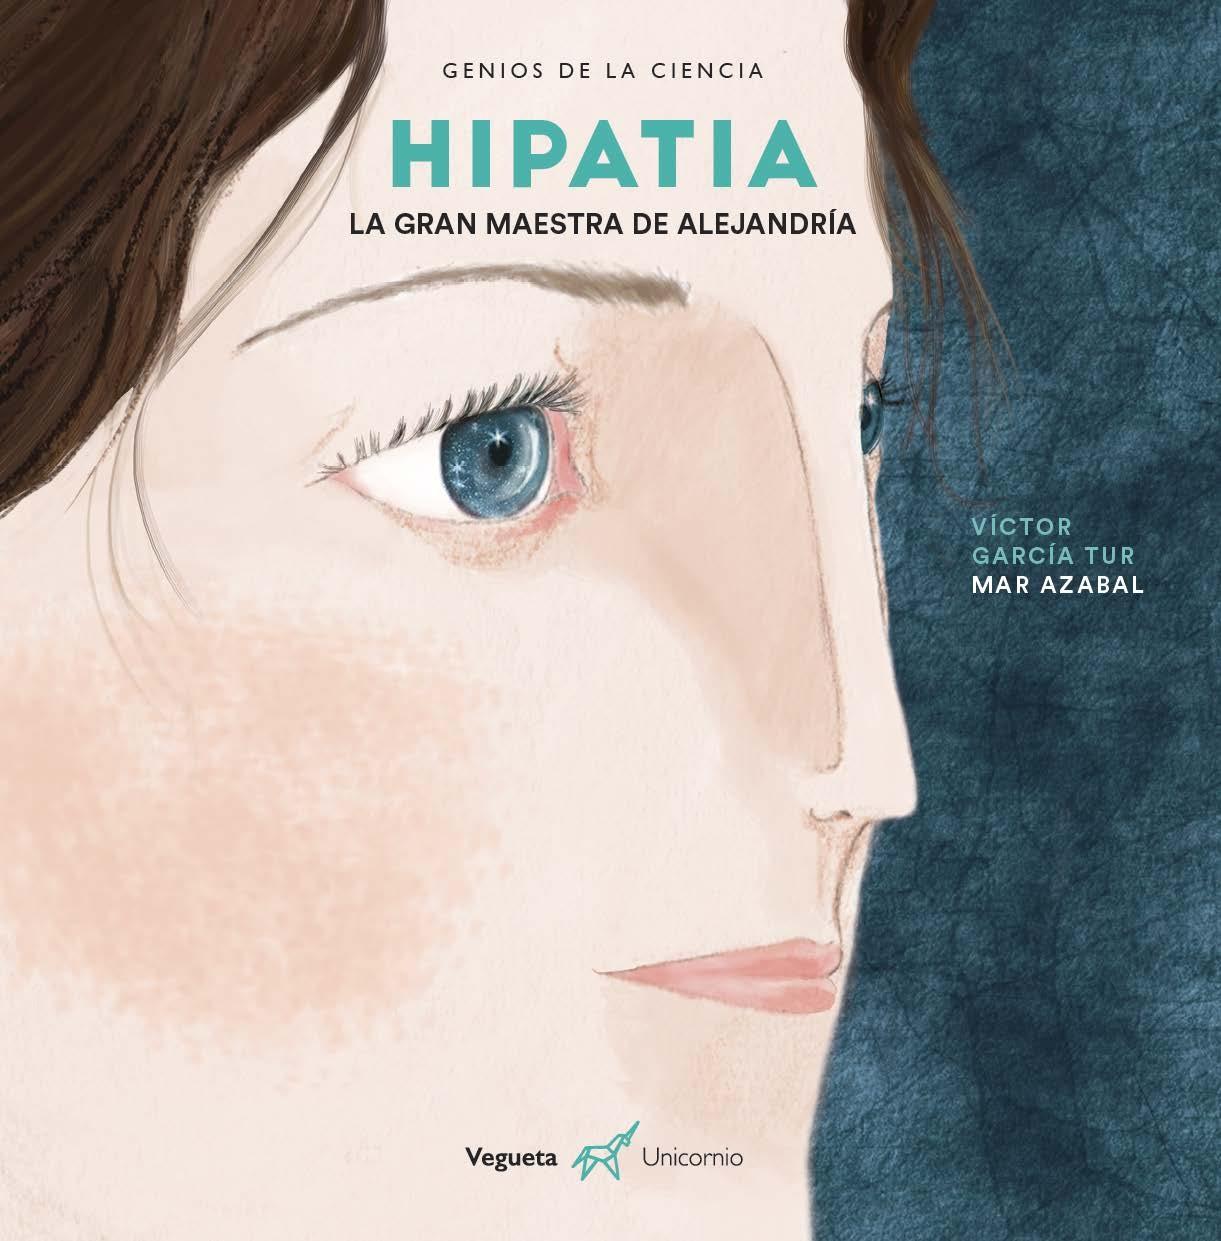 Hipatia "La gran maestra de Alejandría"